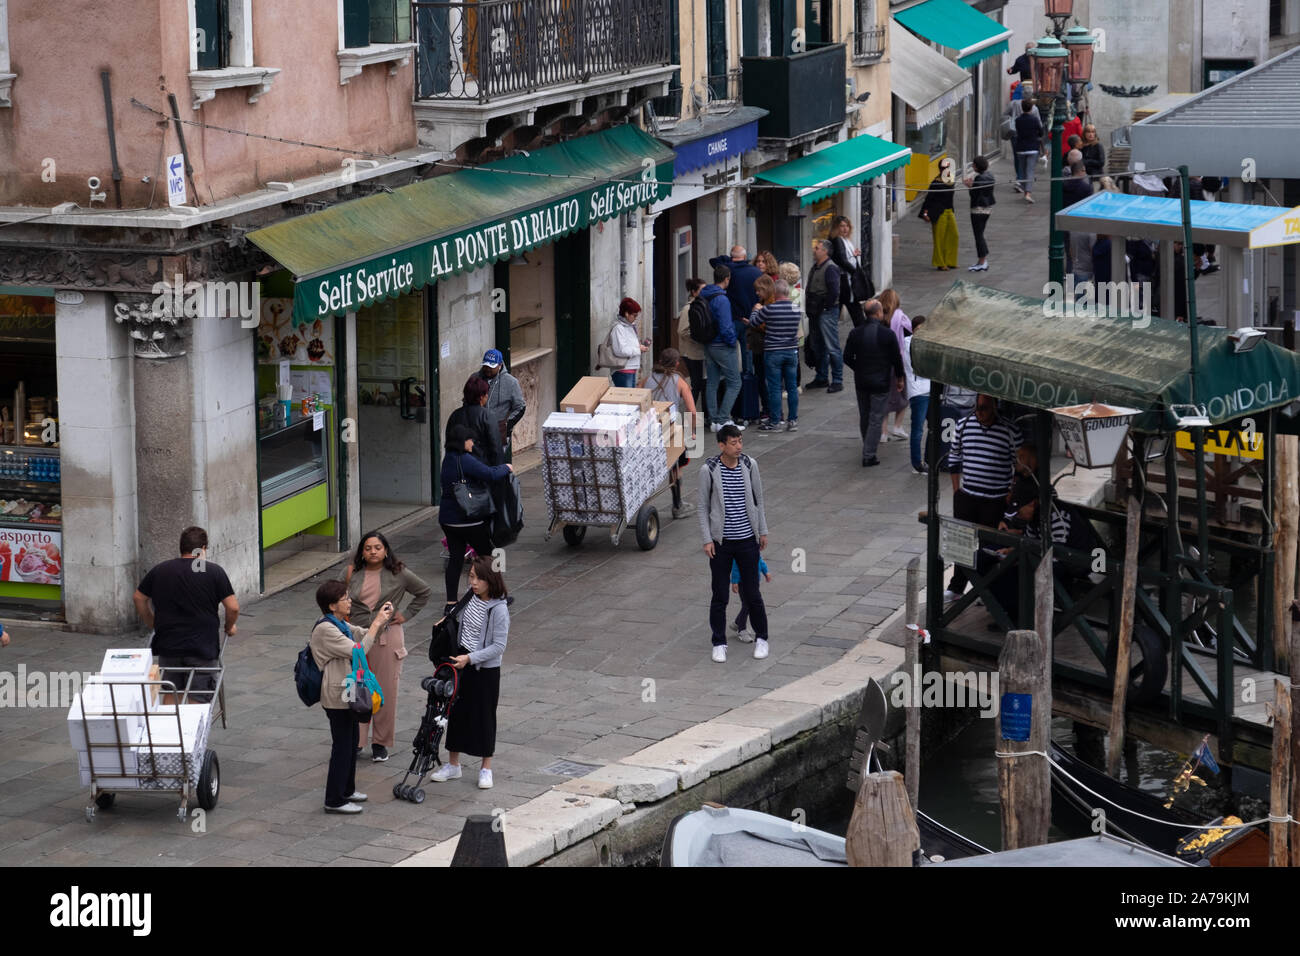 Les livraisons sont faites par les hommes en tirant ou poussant des charrettes à bras dans les rues et les ponts de Venise, au milieu des centaines de touristes. Banque D'Images